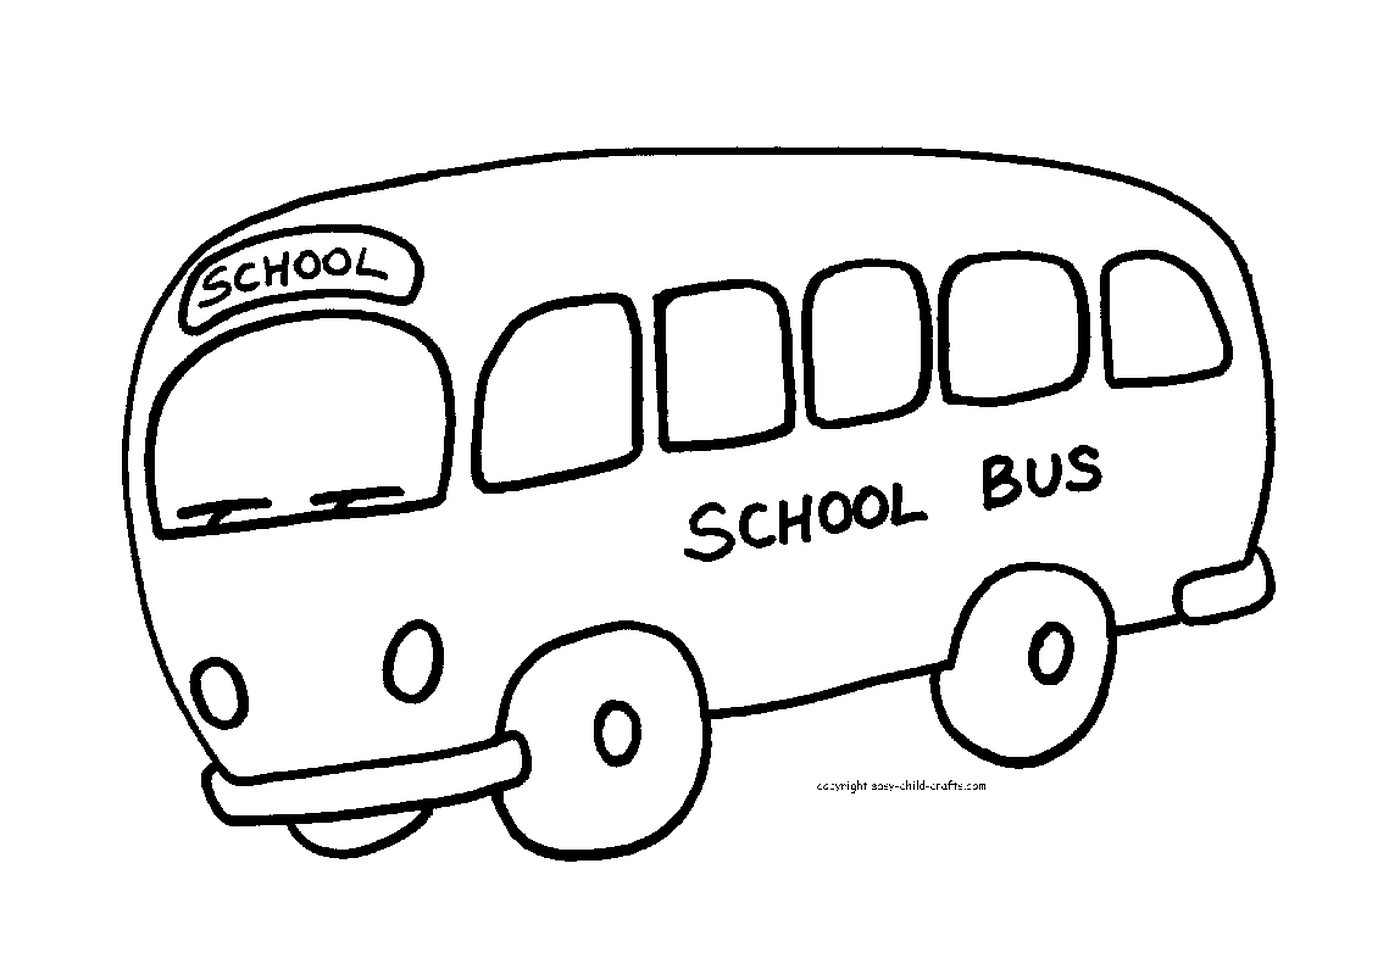   Un bus scolaire prêt à accueillir les élèves 